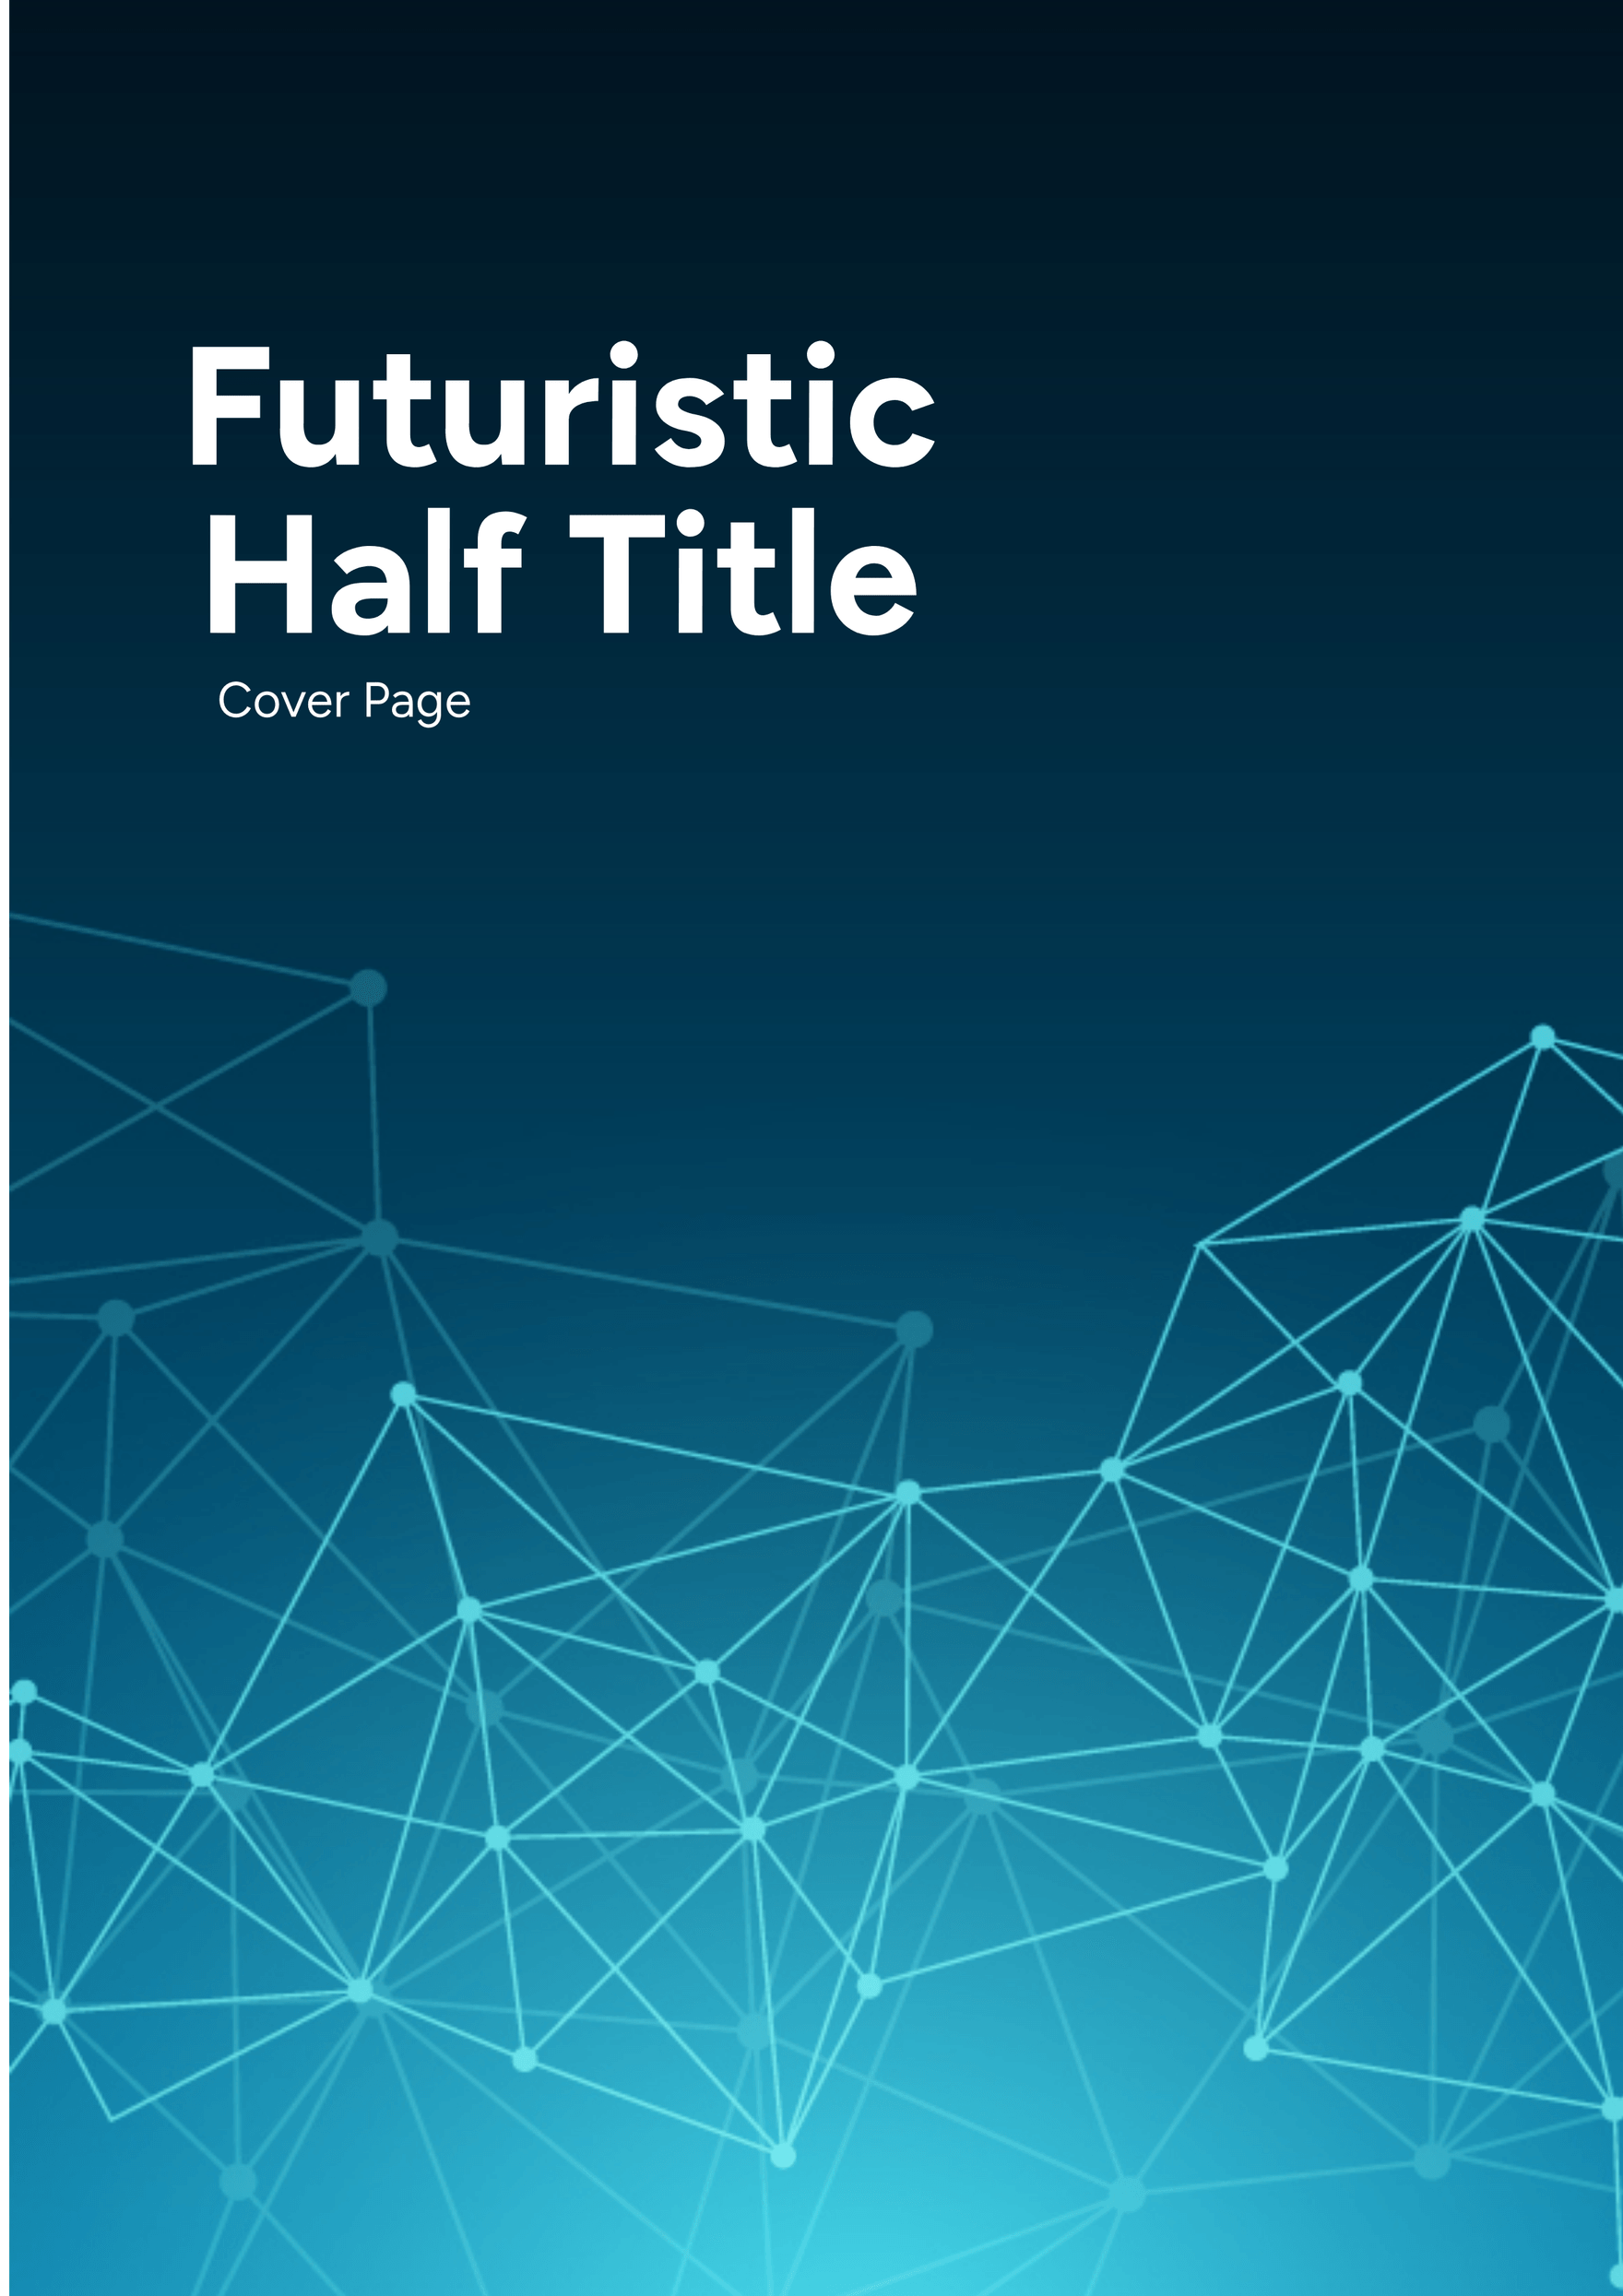 Futuristic Half Title Cover Page Template